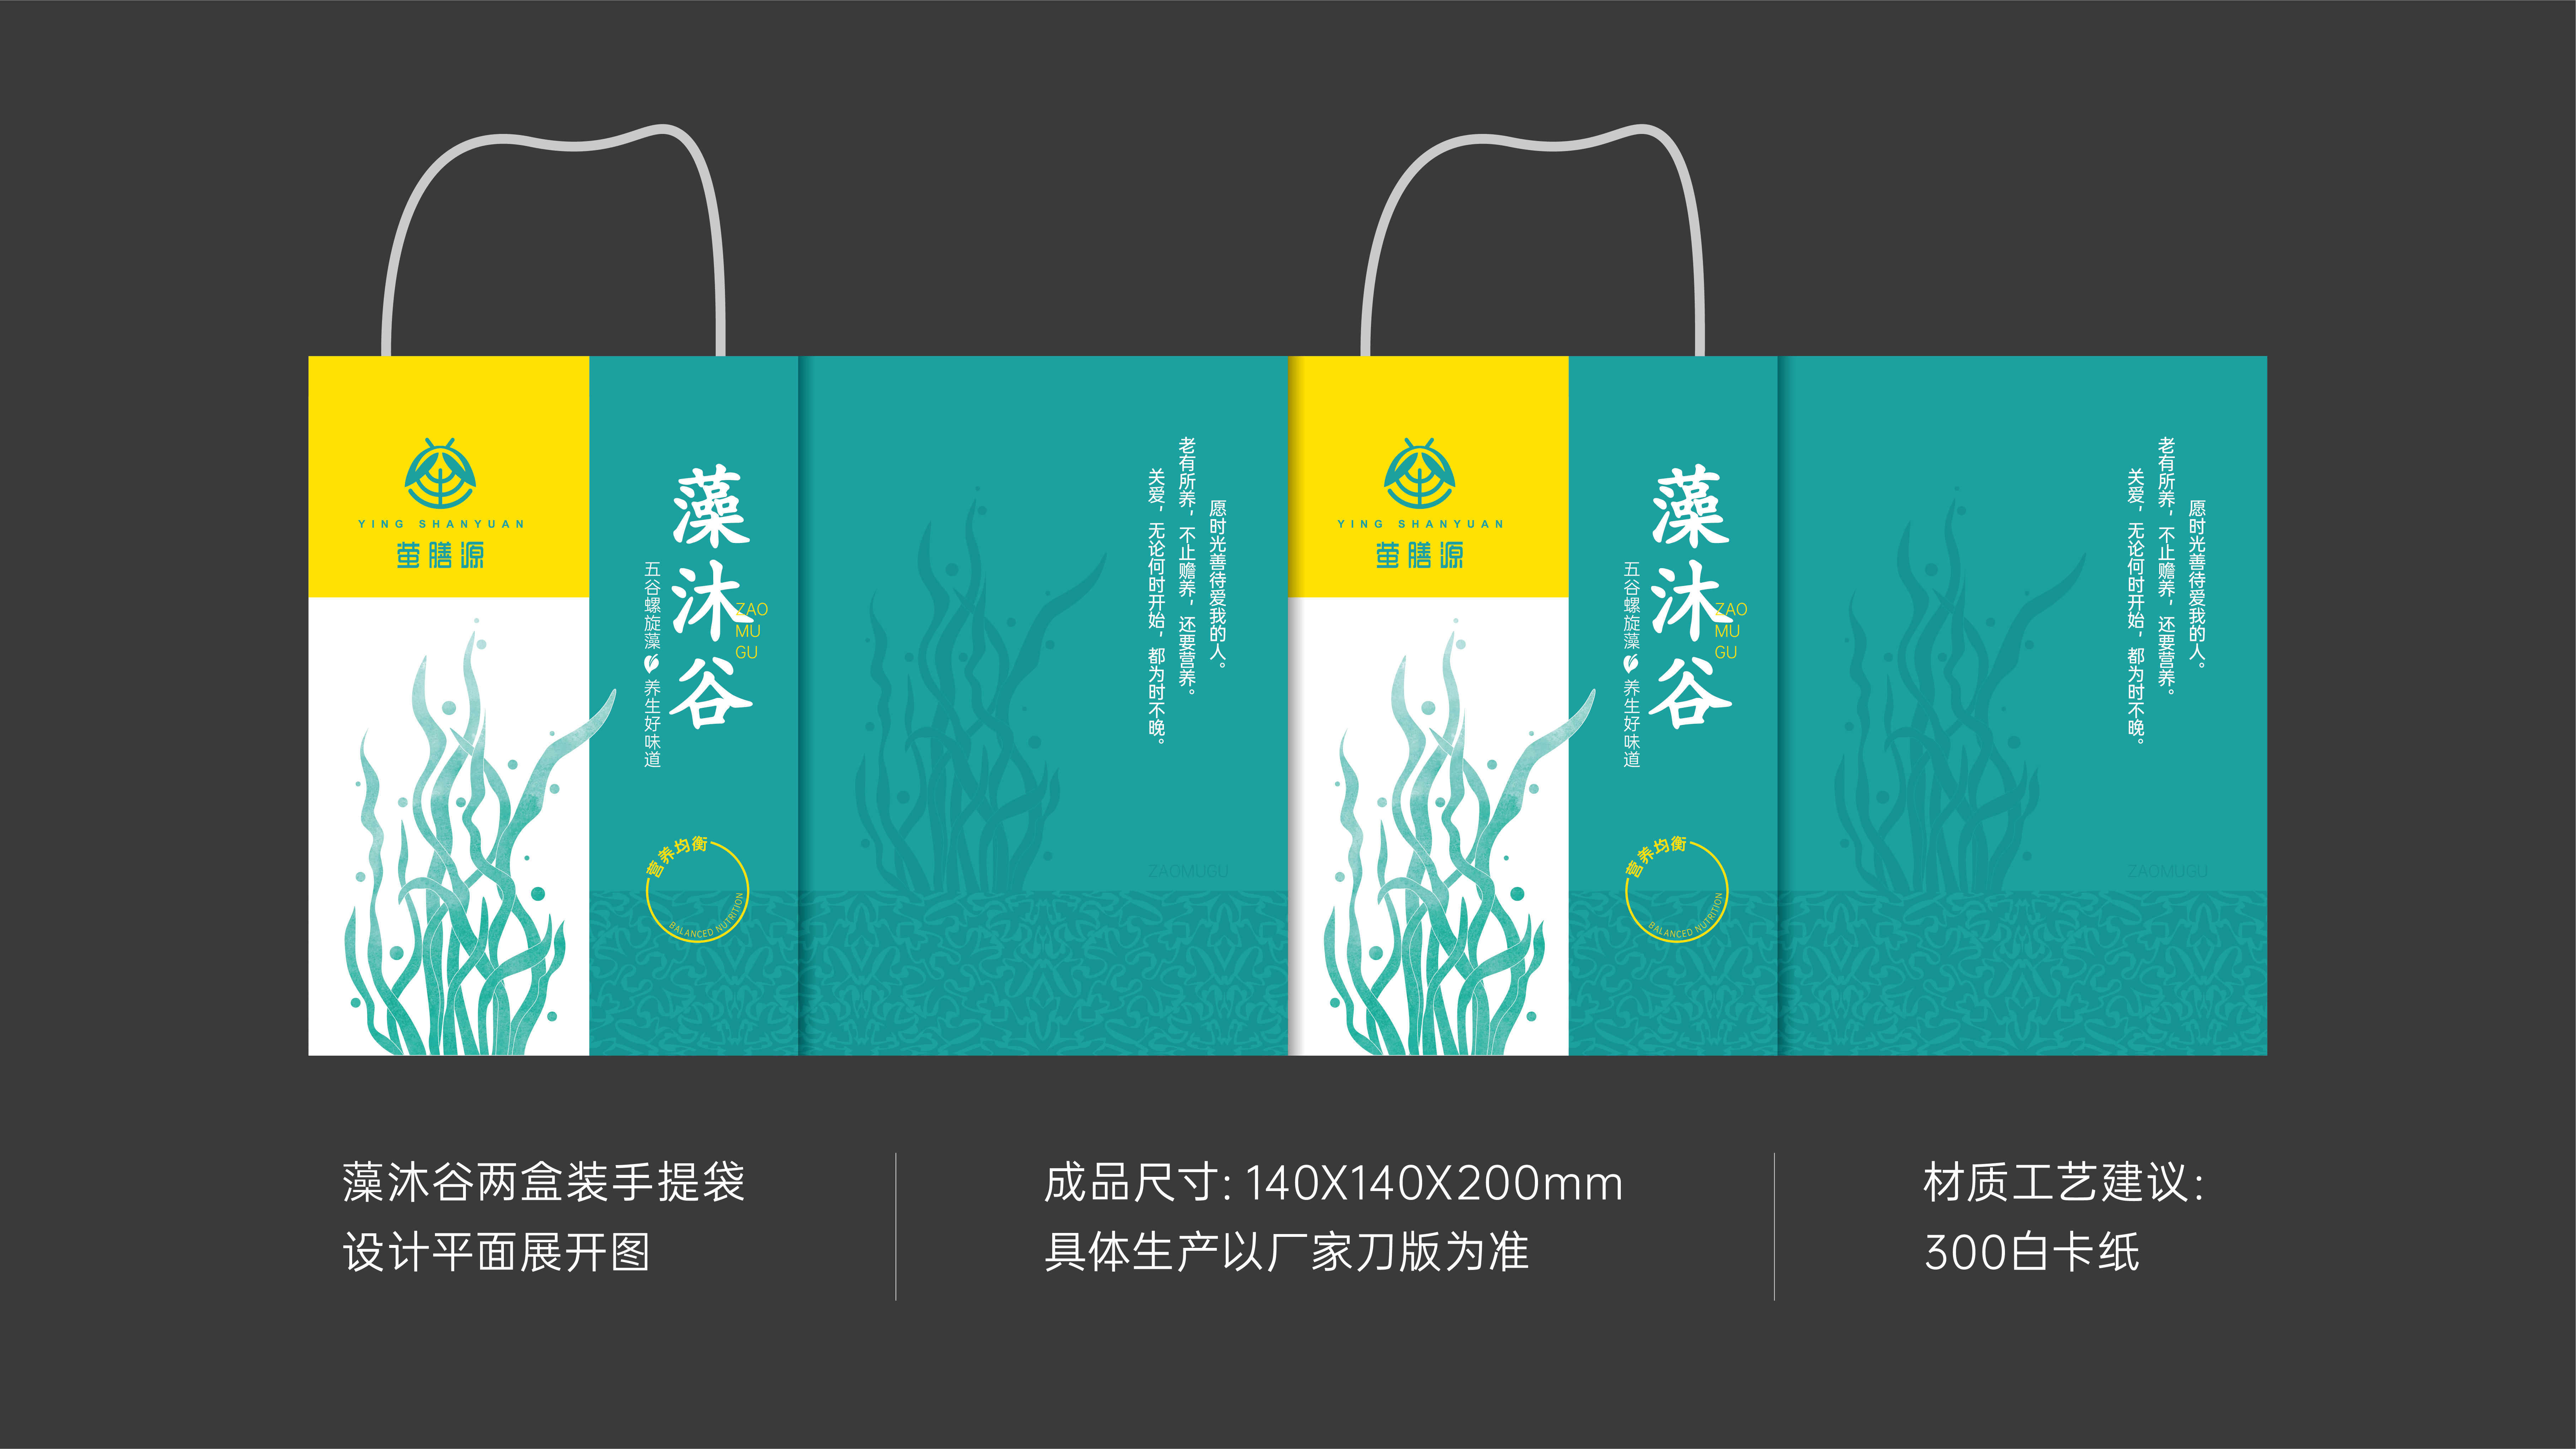 热门唐山瓶型设计公司作品排名前十名单公布 